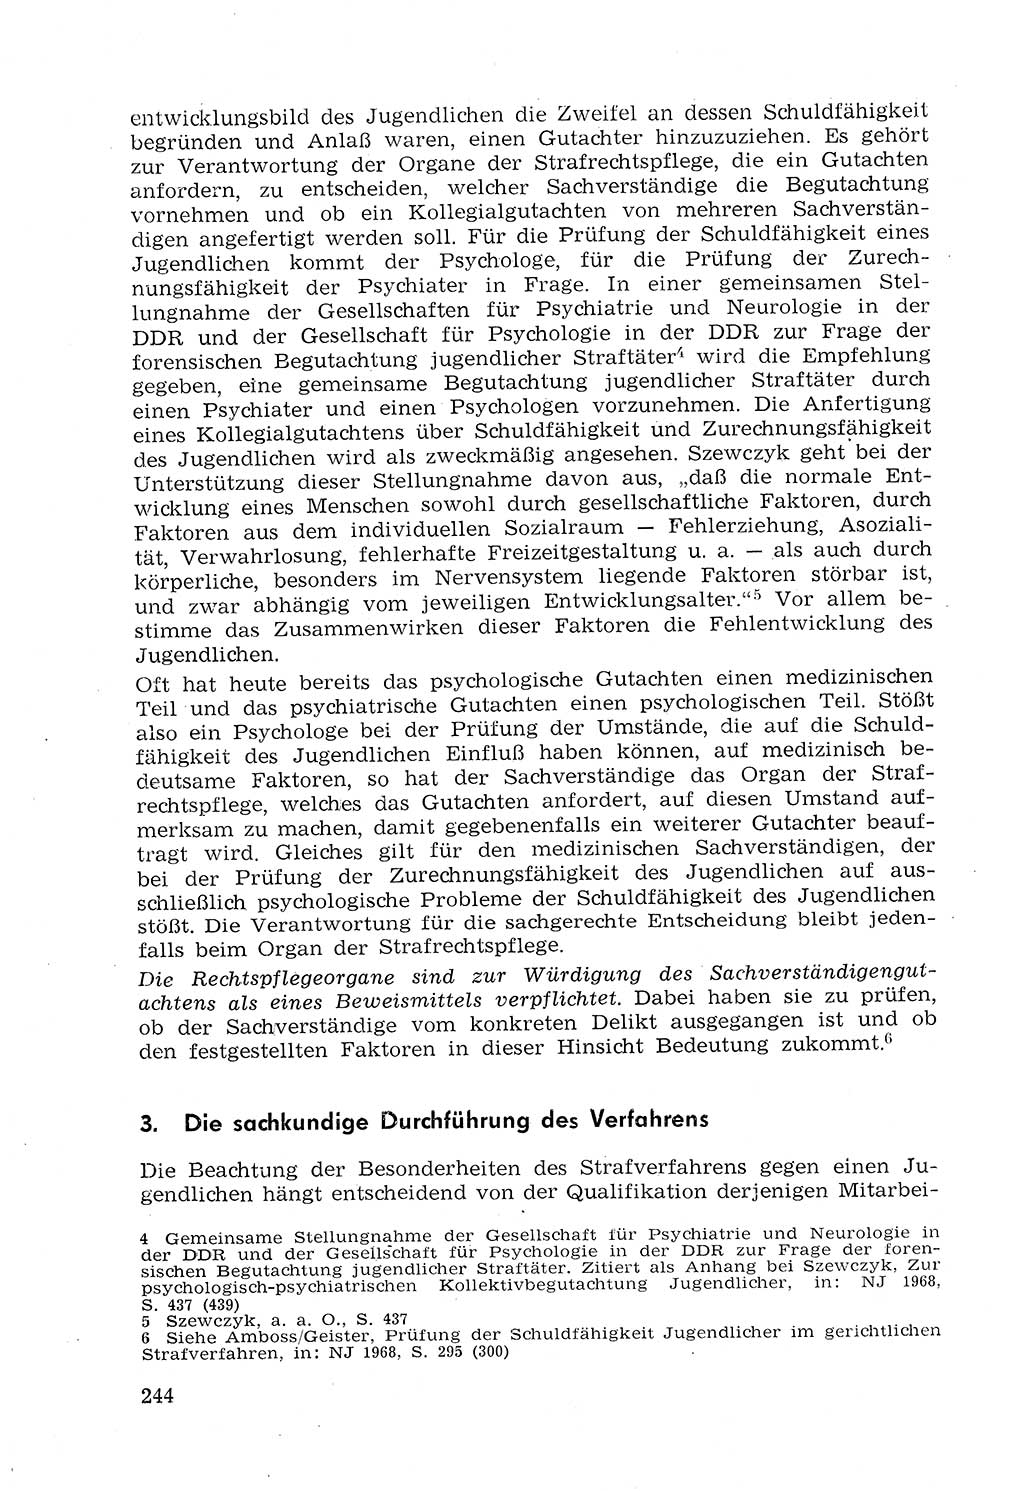 Strafprozeßrecht der DDR (Deutsche Demokratische Republik), Lehrmaterial 1969, Seite 244 (Strafprozeßr. DDR Lehrmat. 1969, S. 244)